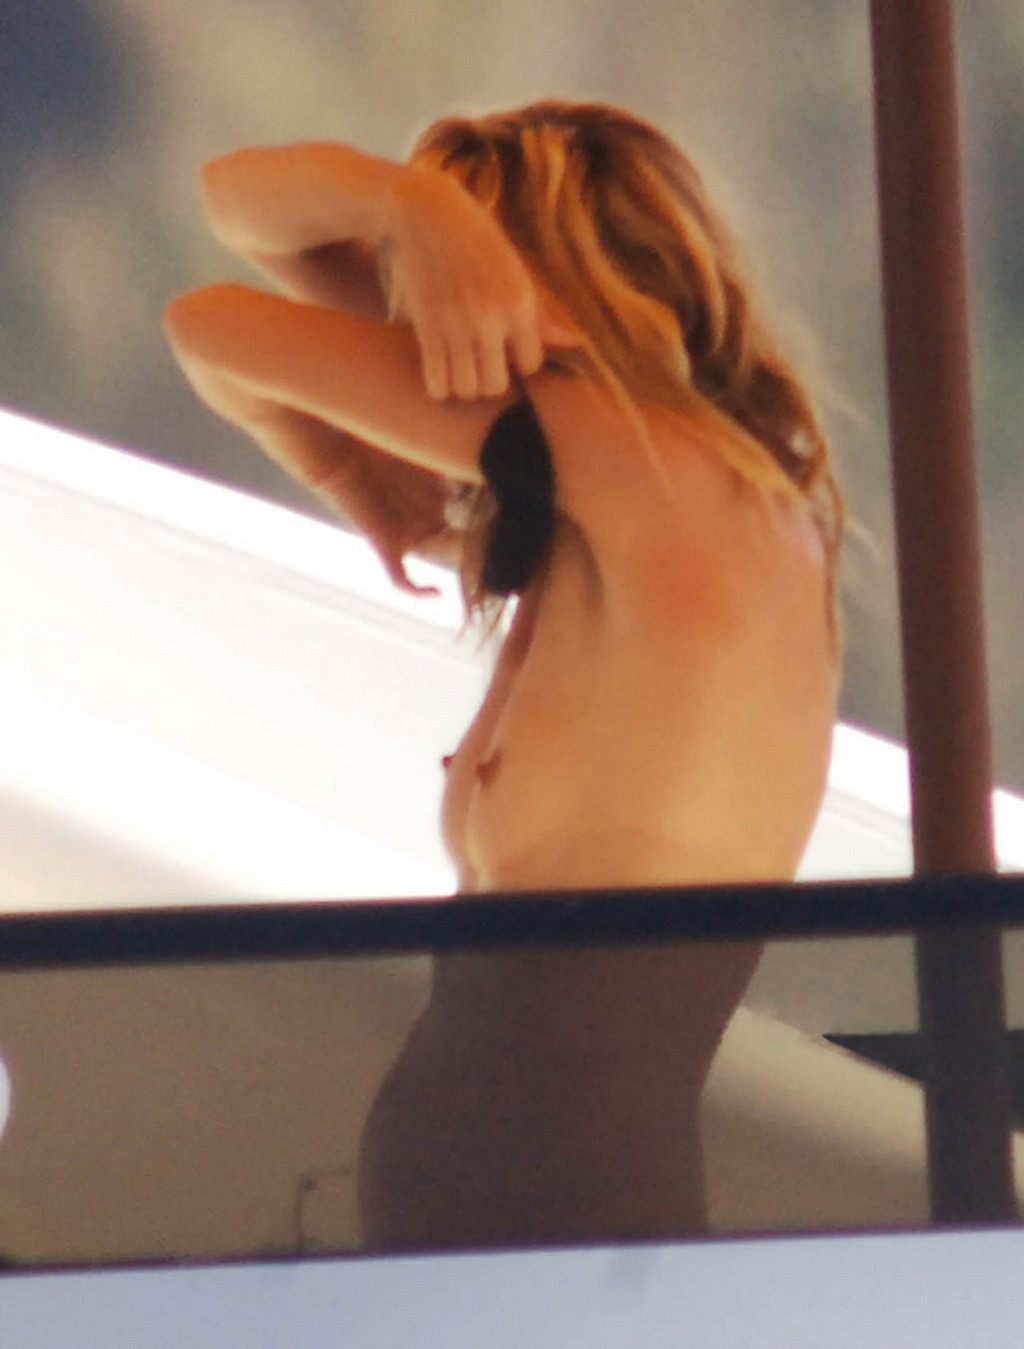 Heidi Klum caught sunbathing topless on vacation in Ibiza #75293265